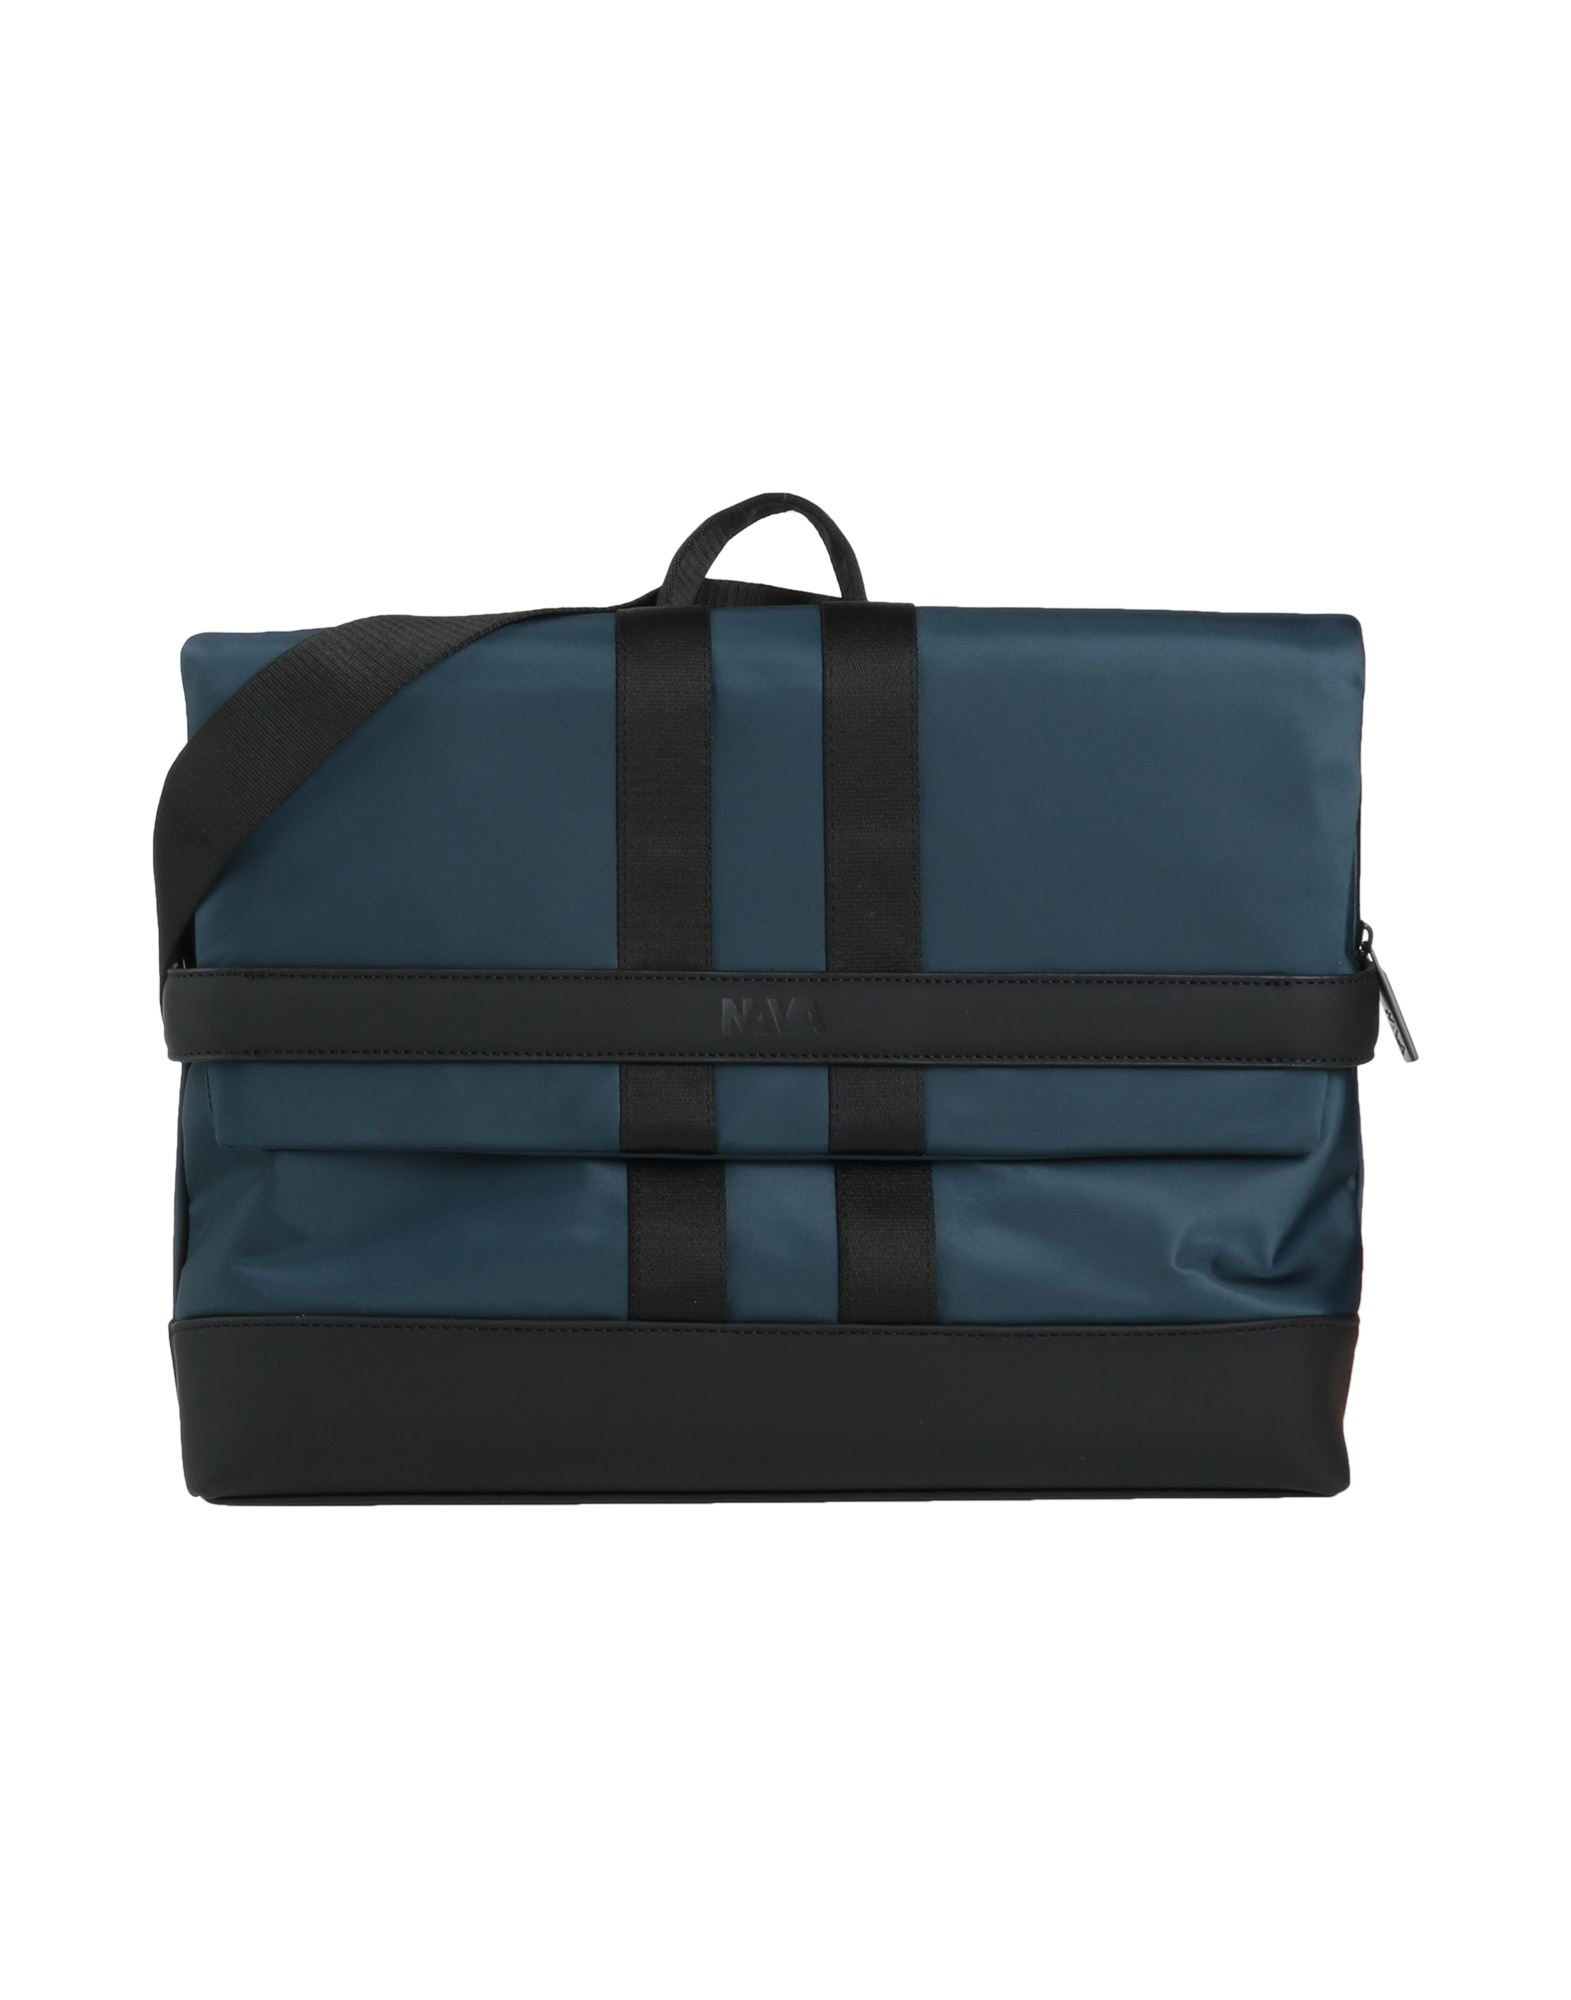 Nava Handbags In Midnight Blue